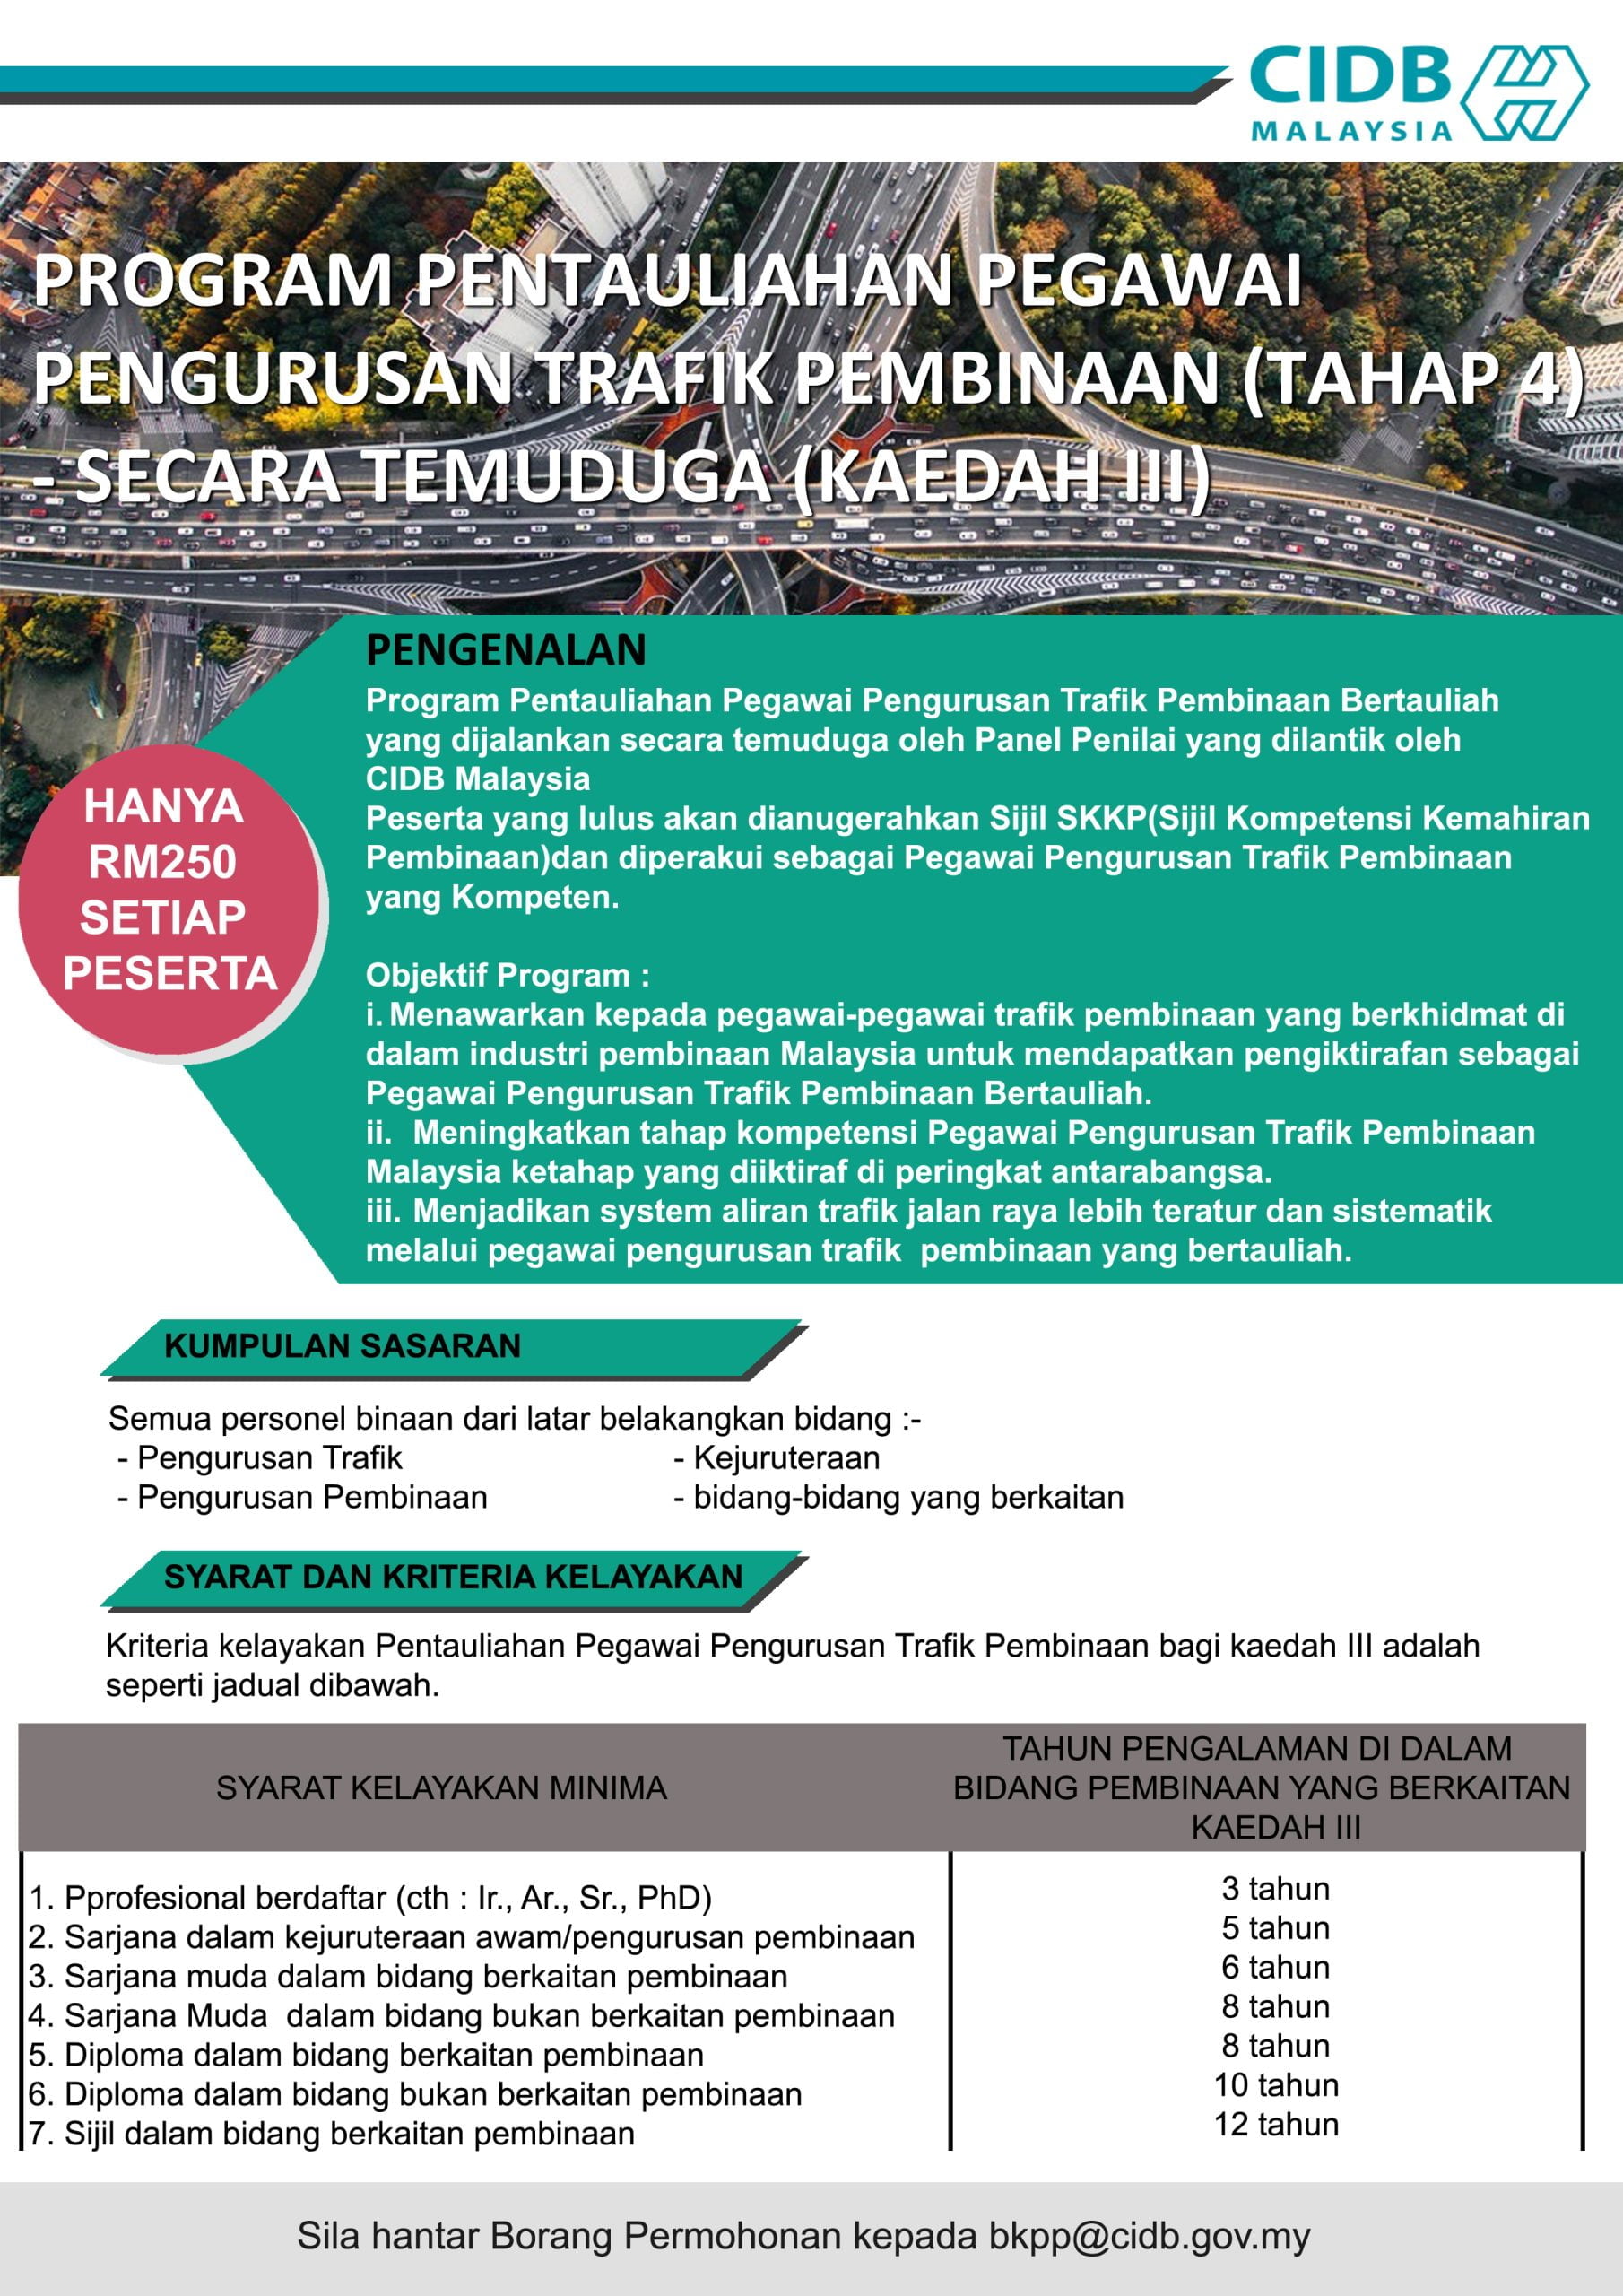 Program Pentauliahan Pegawai Pengurusan Trafik Pembinaan (Tahap 4) Secara Temuduga (Kaedah iii) CTMO BANNER OGOS 2020